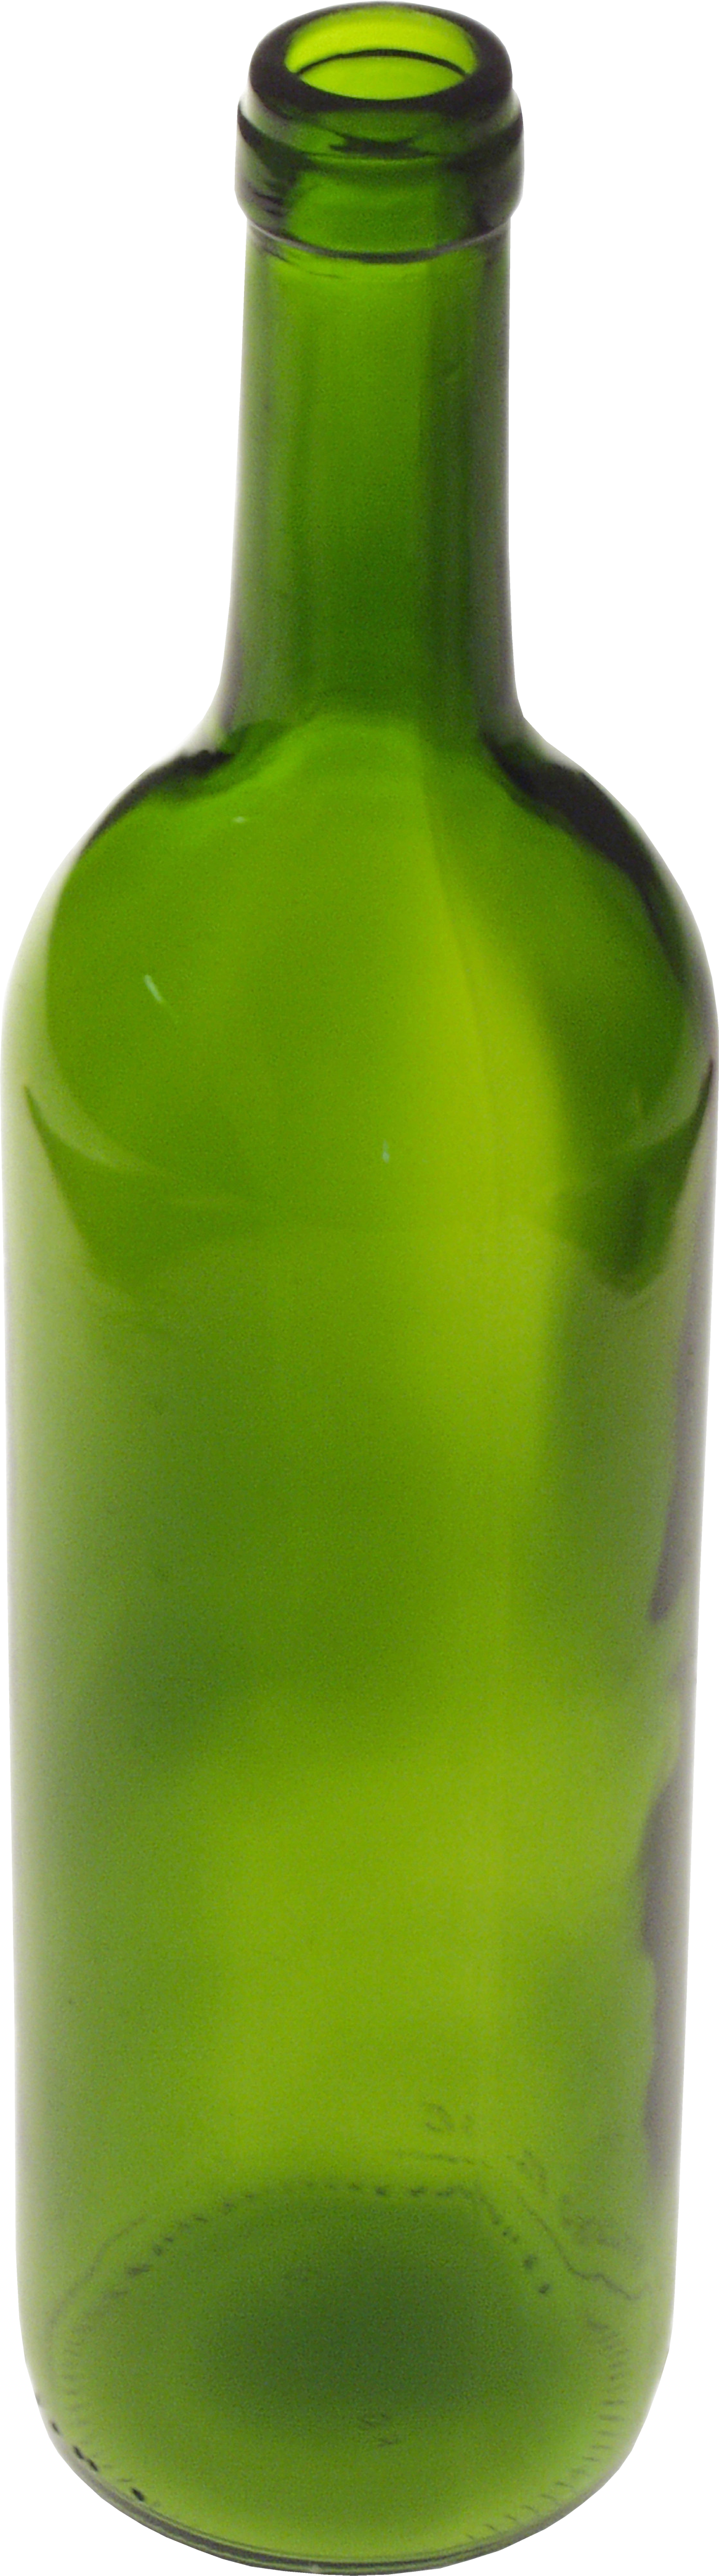 ขวดแก้วสีเขียว